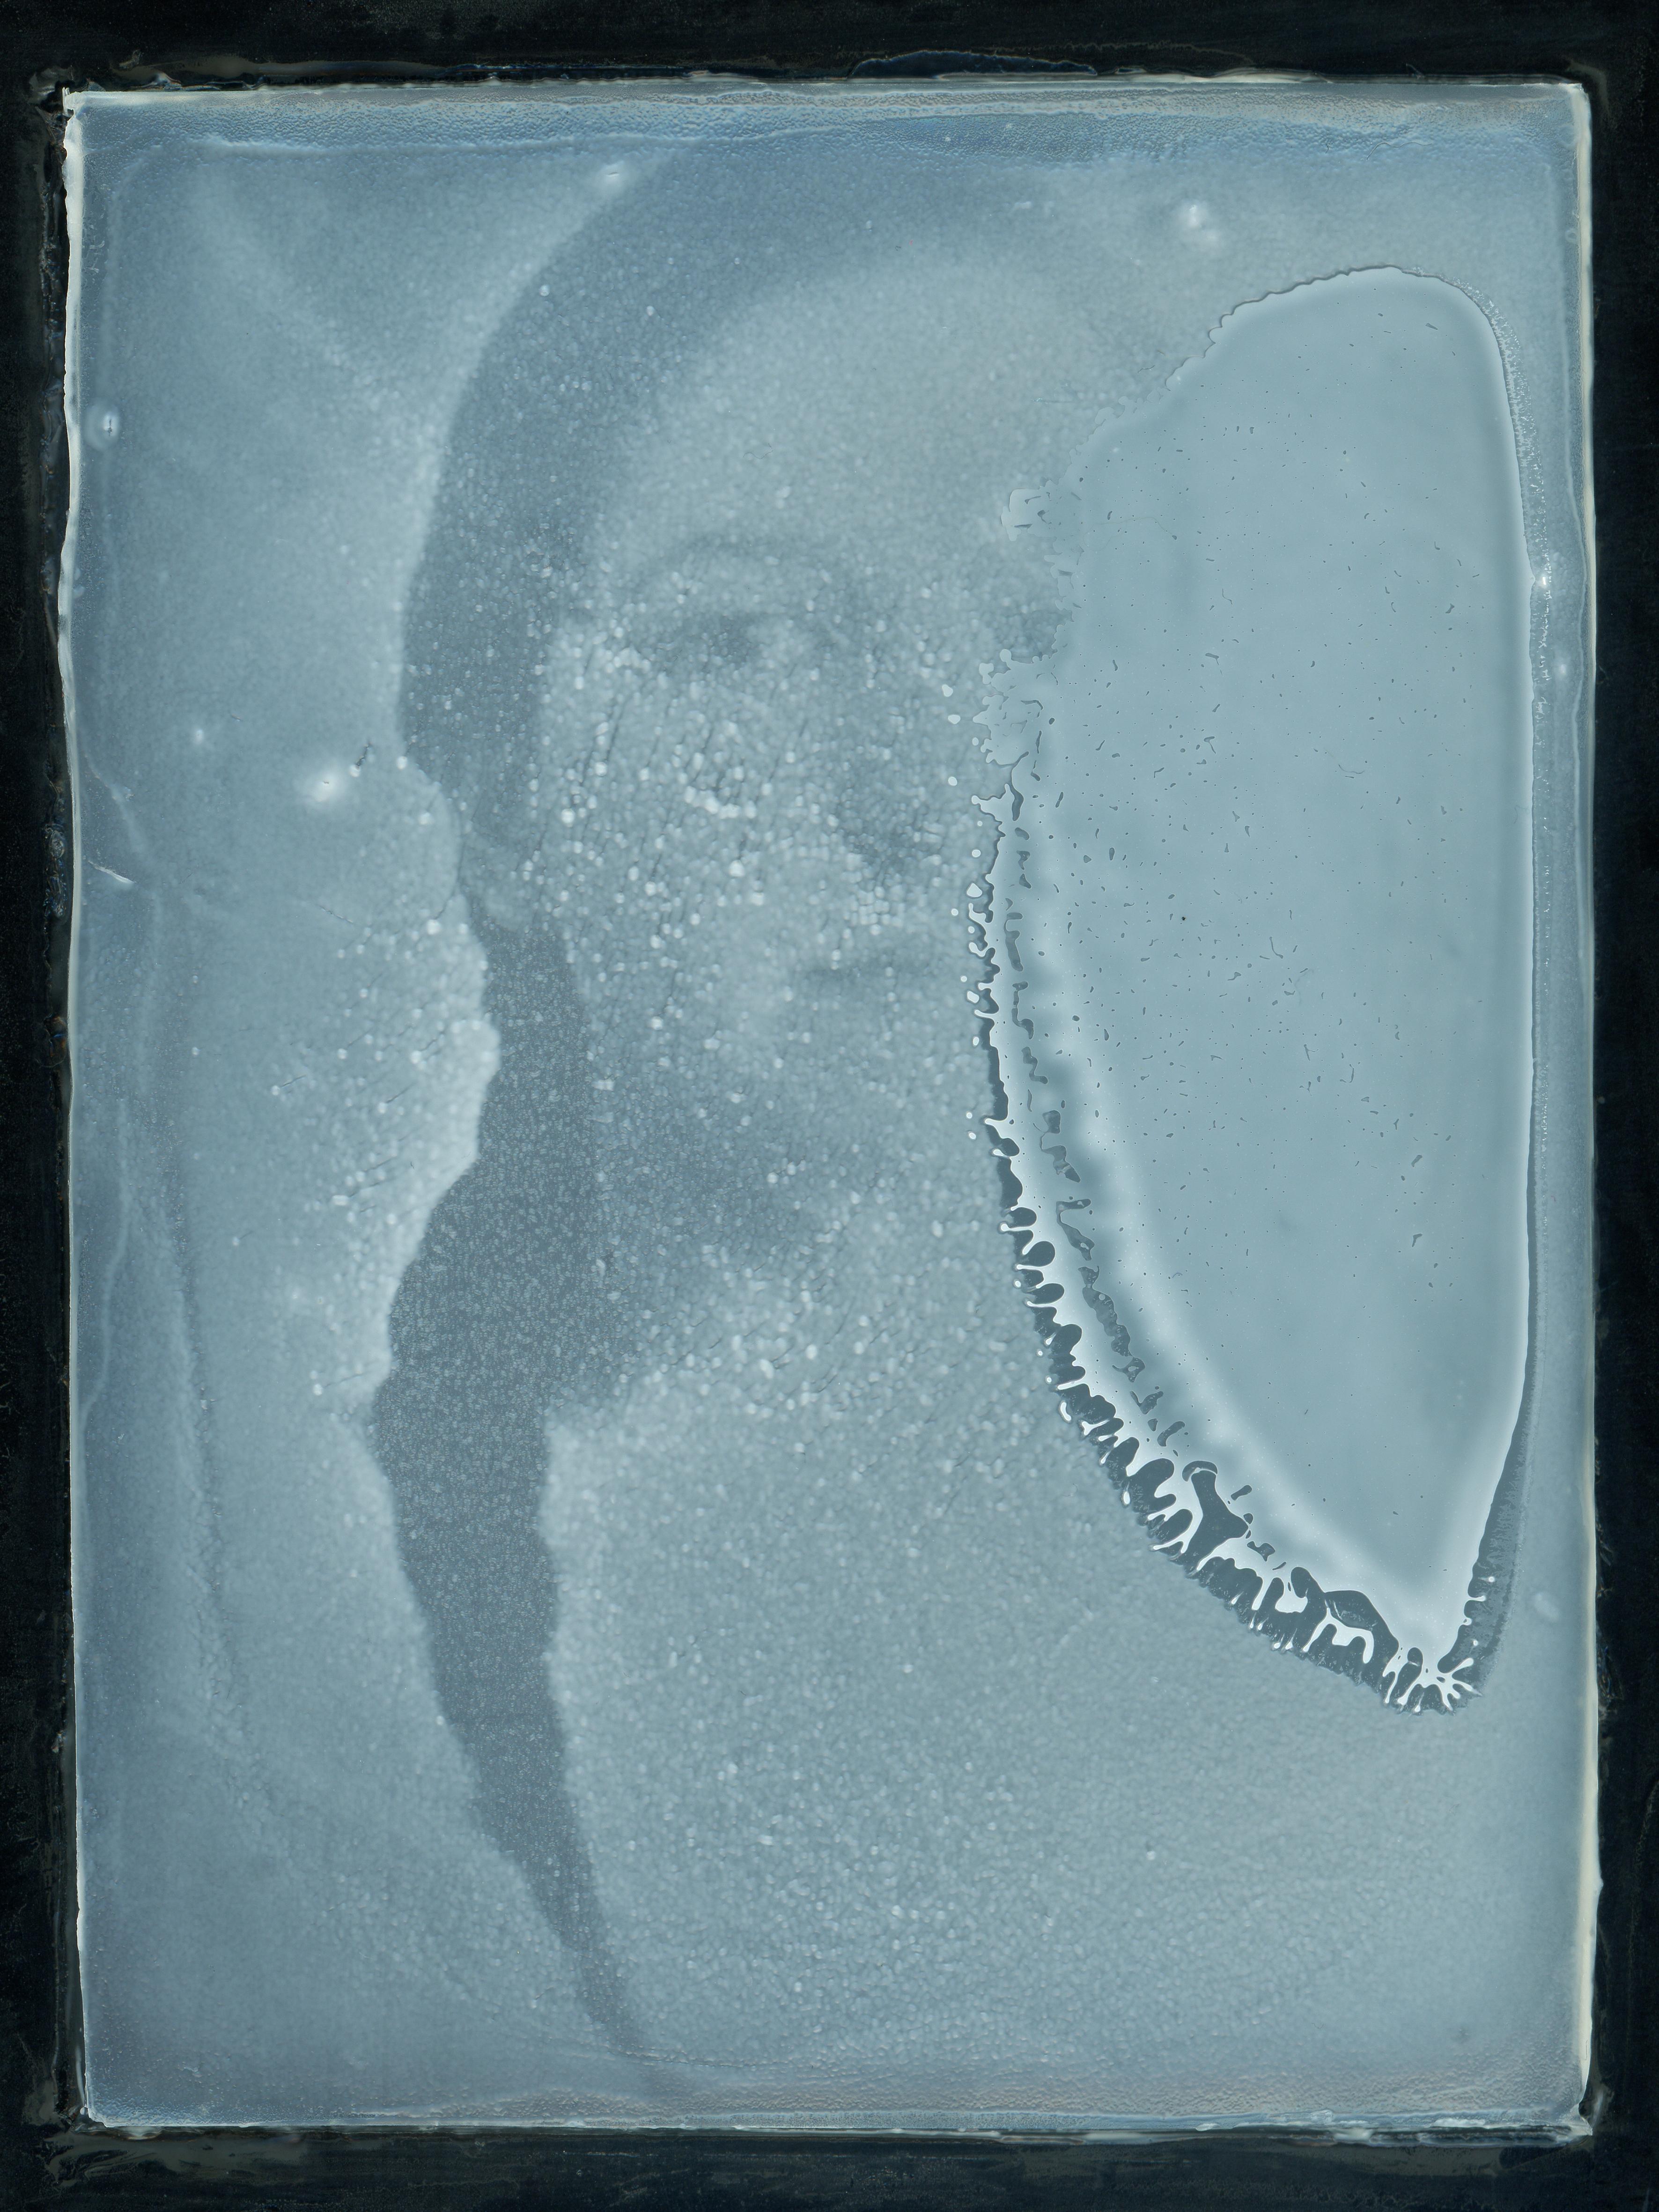 Portrait Photograph Urizen Freaza - Yeasted Teresa - Contemporain, Conceptuel, Polaroid, 21e Siècle, Portrait